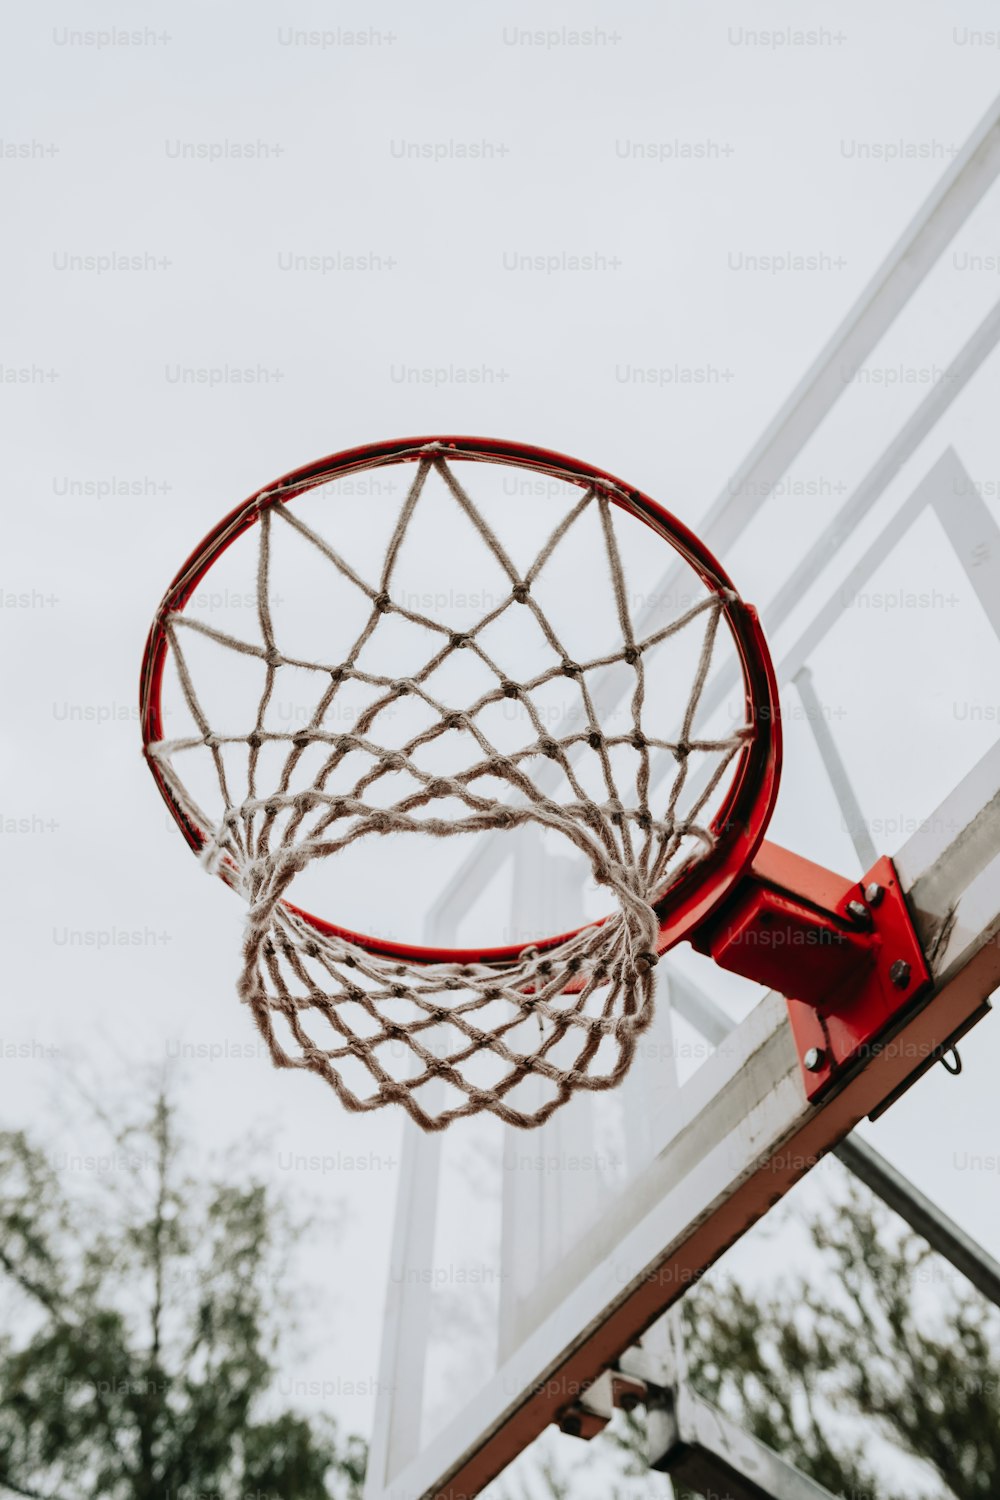 Ein Basketball, der durch das Netz eines Basketballkorbs geht